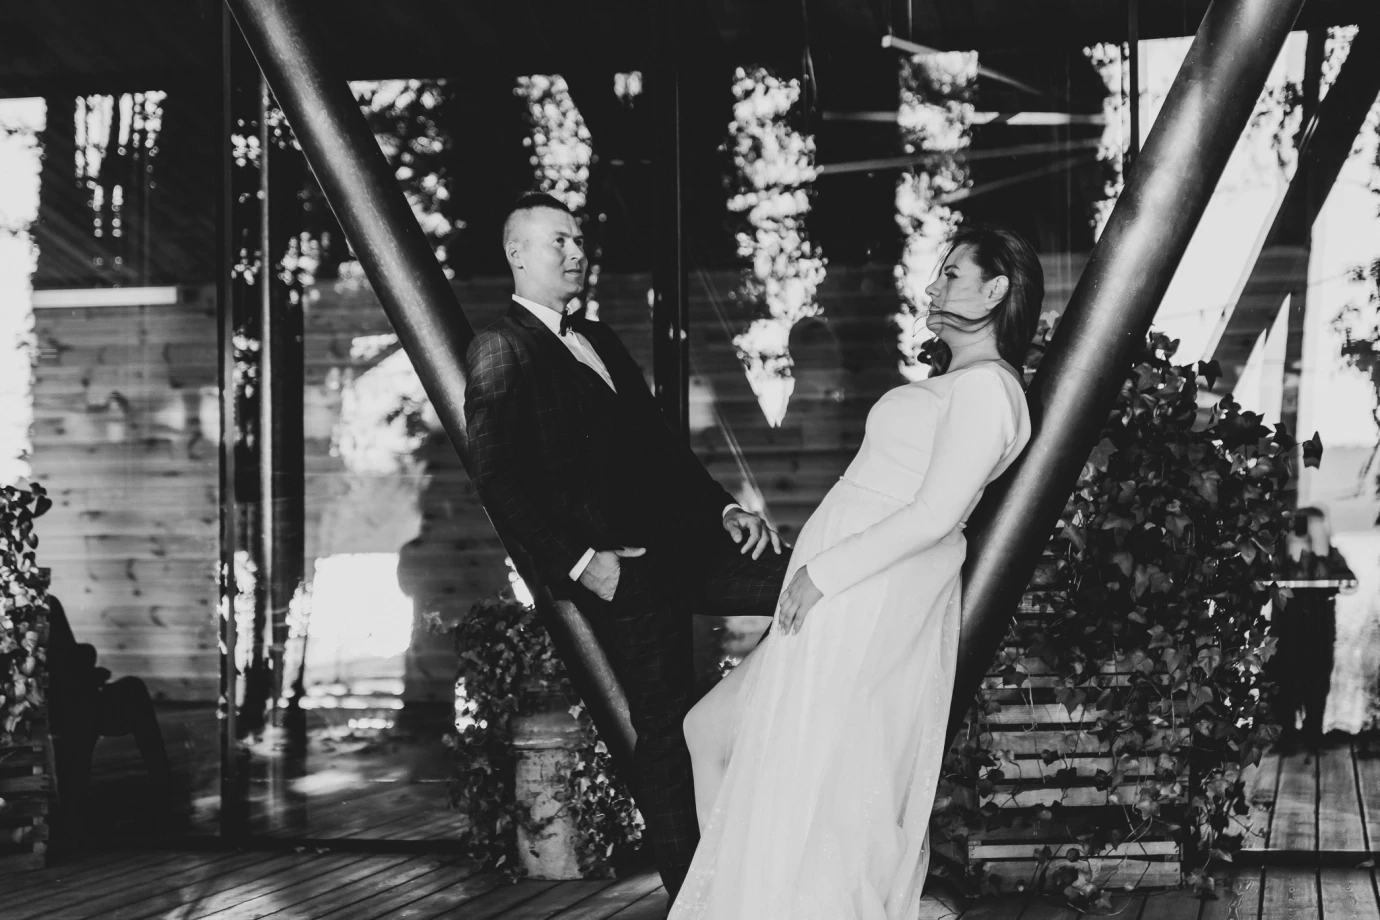 zdjęcia makow-mazowiecki fotograf kempastudio portfolio zdjecia slubne inspiracje wesele plener slubny sesja slubna